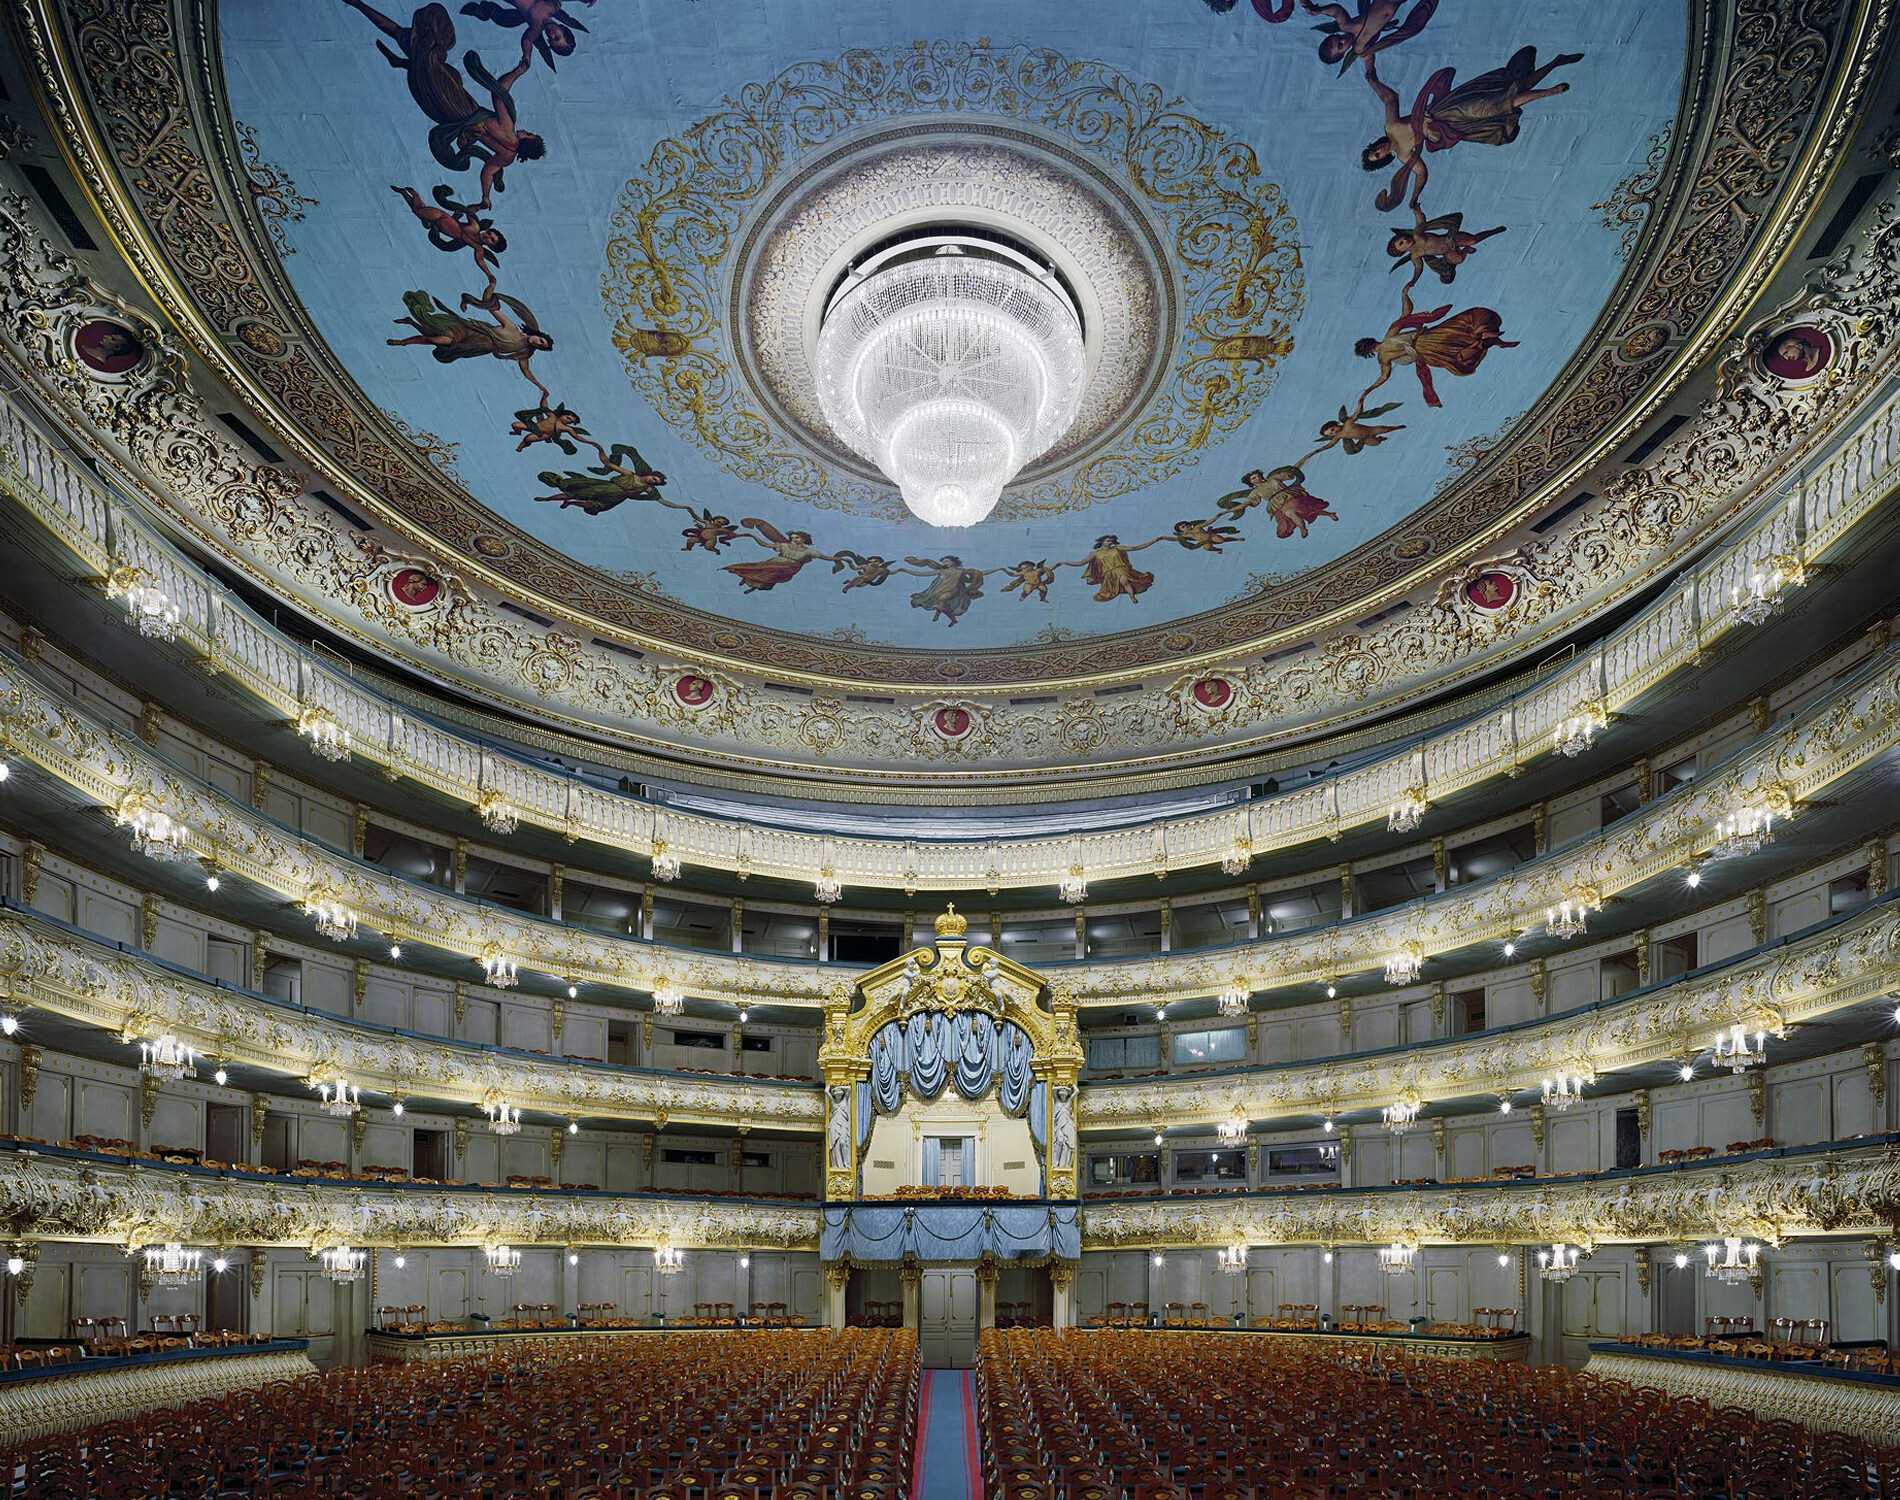 Мариинский театр, Санкт-Петербург, Россия, 2009 год. Фотограф Дэвид Левенти